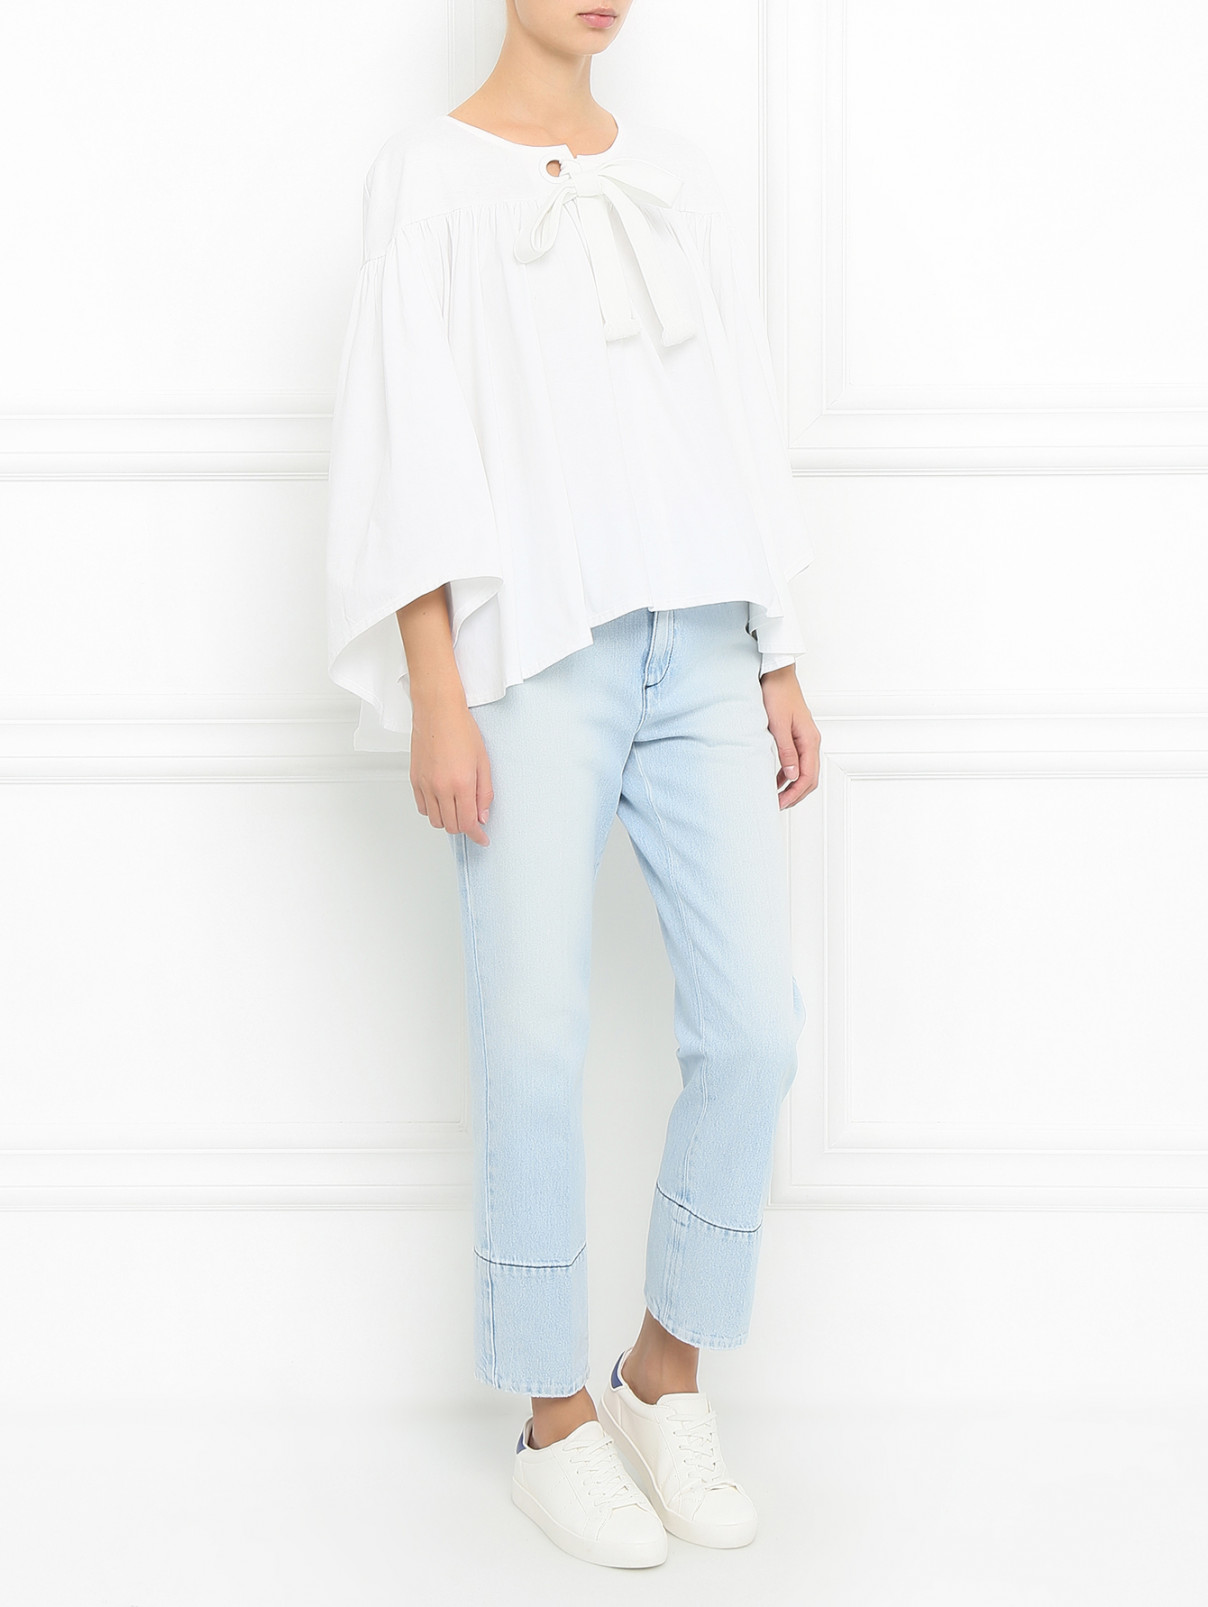 Блуза из хлопка с драпировкой Sonia Rykiel  –  Модель Общий вид  – Цвет:  Белый